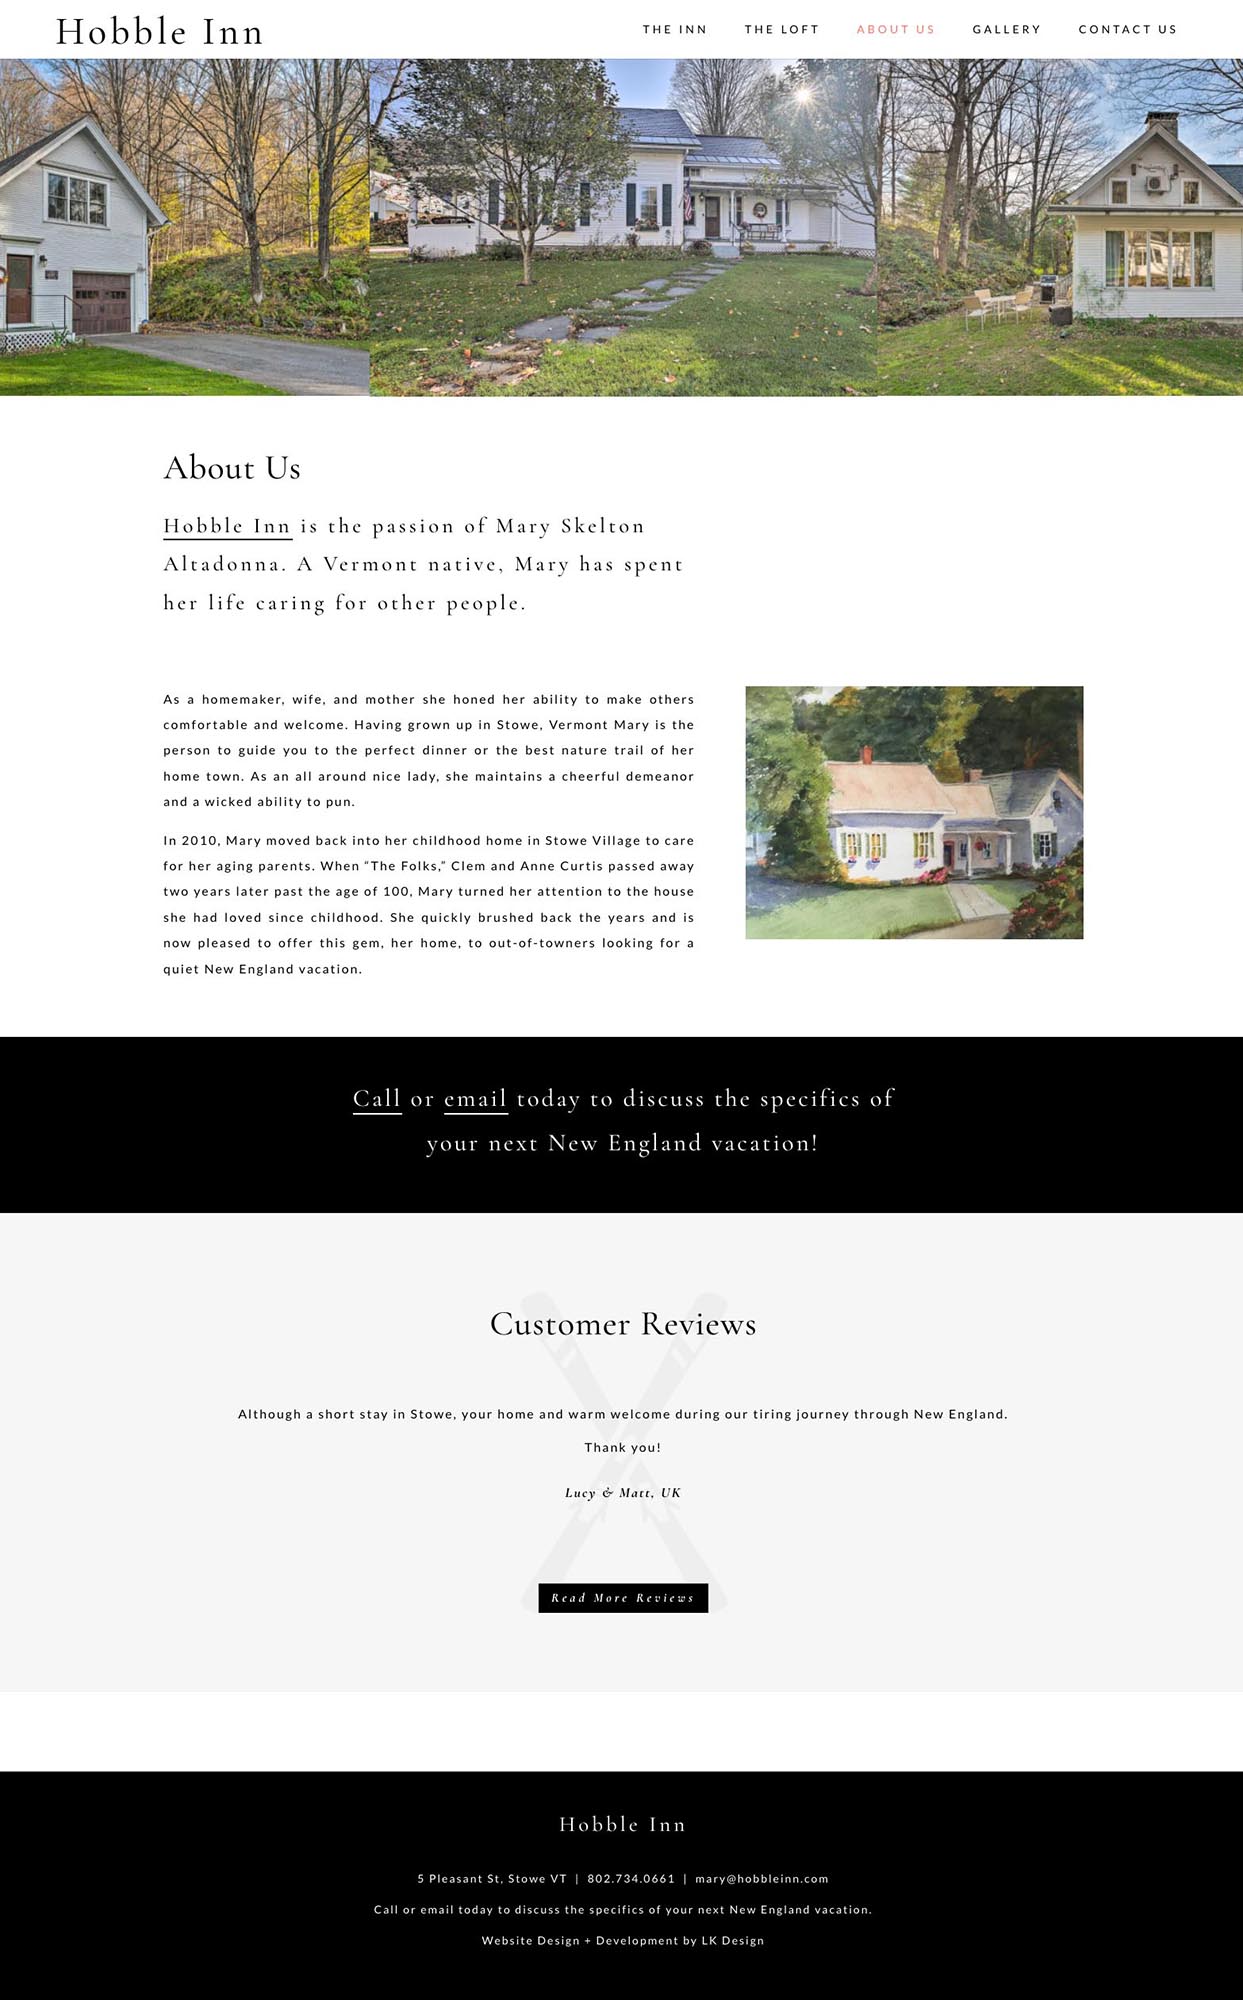 The Hobble Inn Web Design and Development